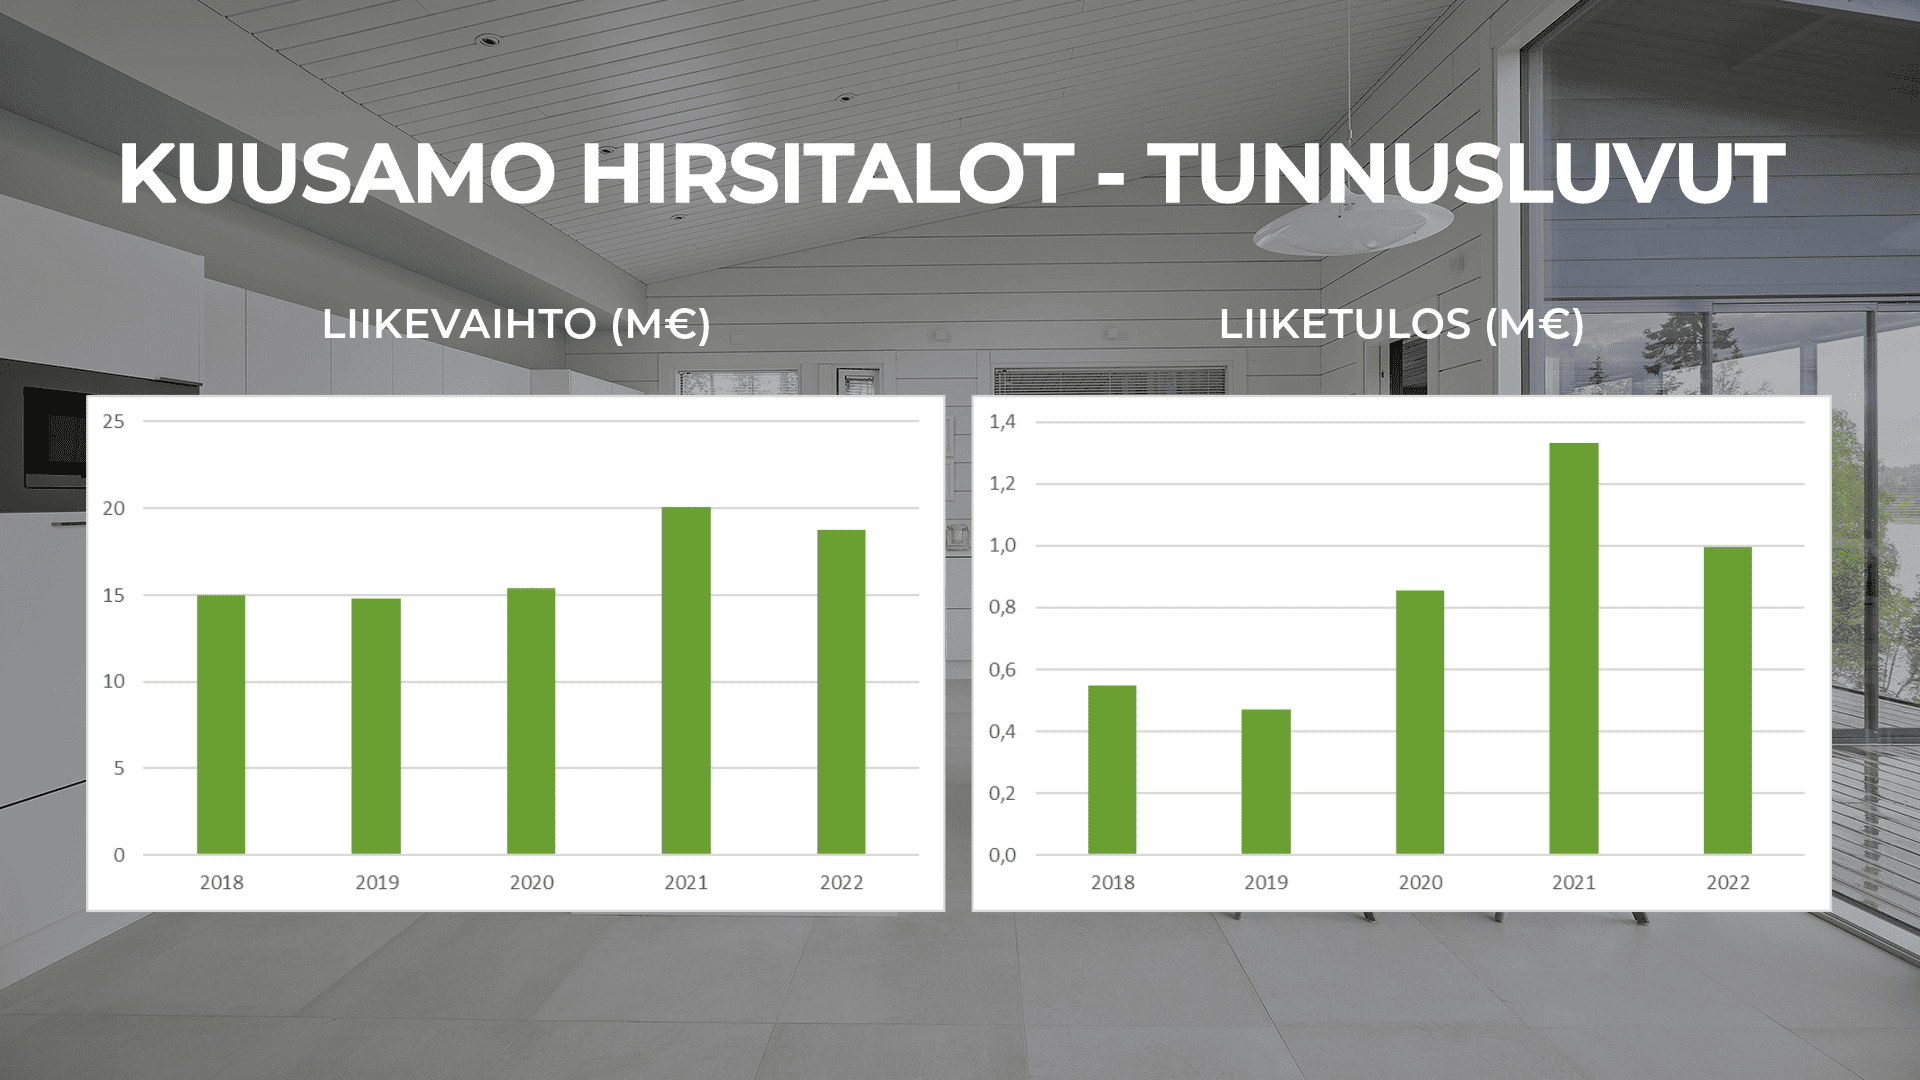 Kuusamo Hirsitalojen taloustilannetta avaa kuvassa liikevaihdot ja liiketulokset viideltä edelliseltä vuodelta.